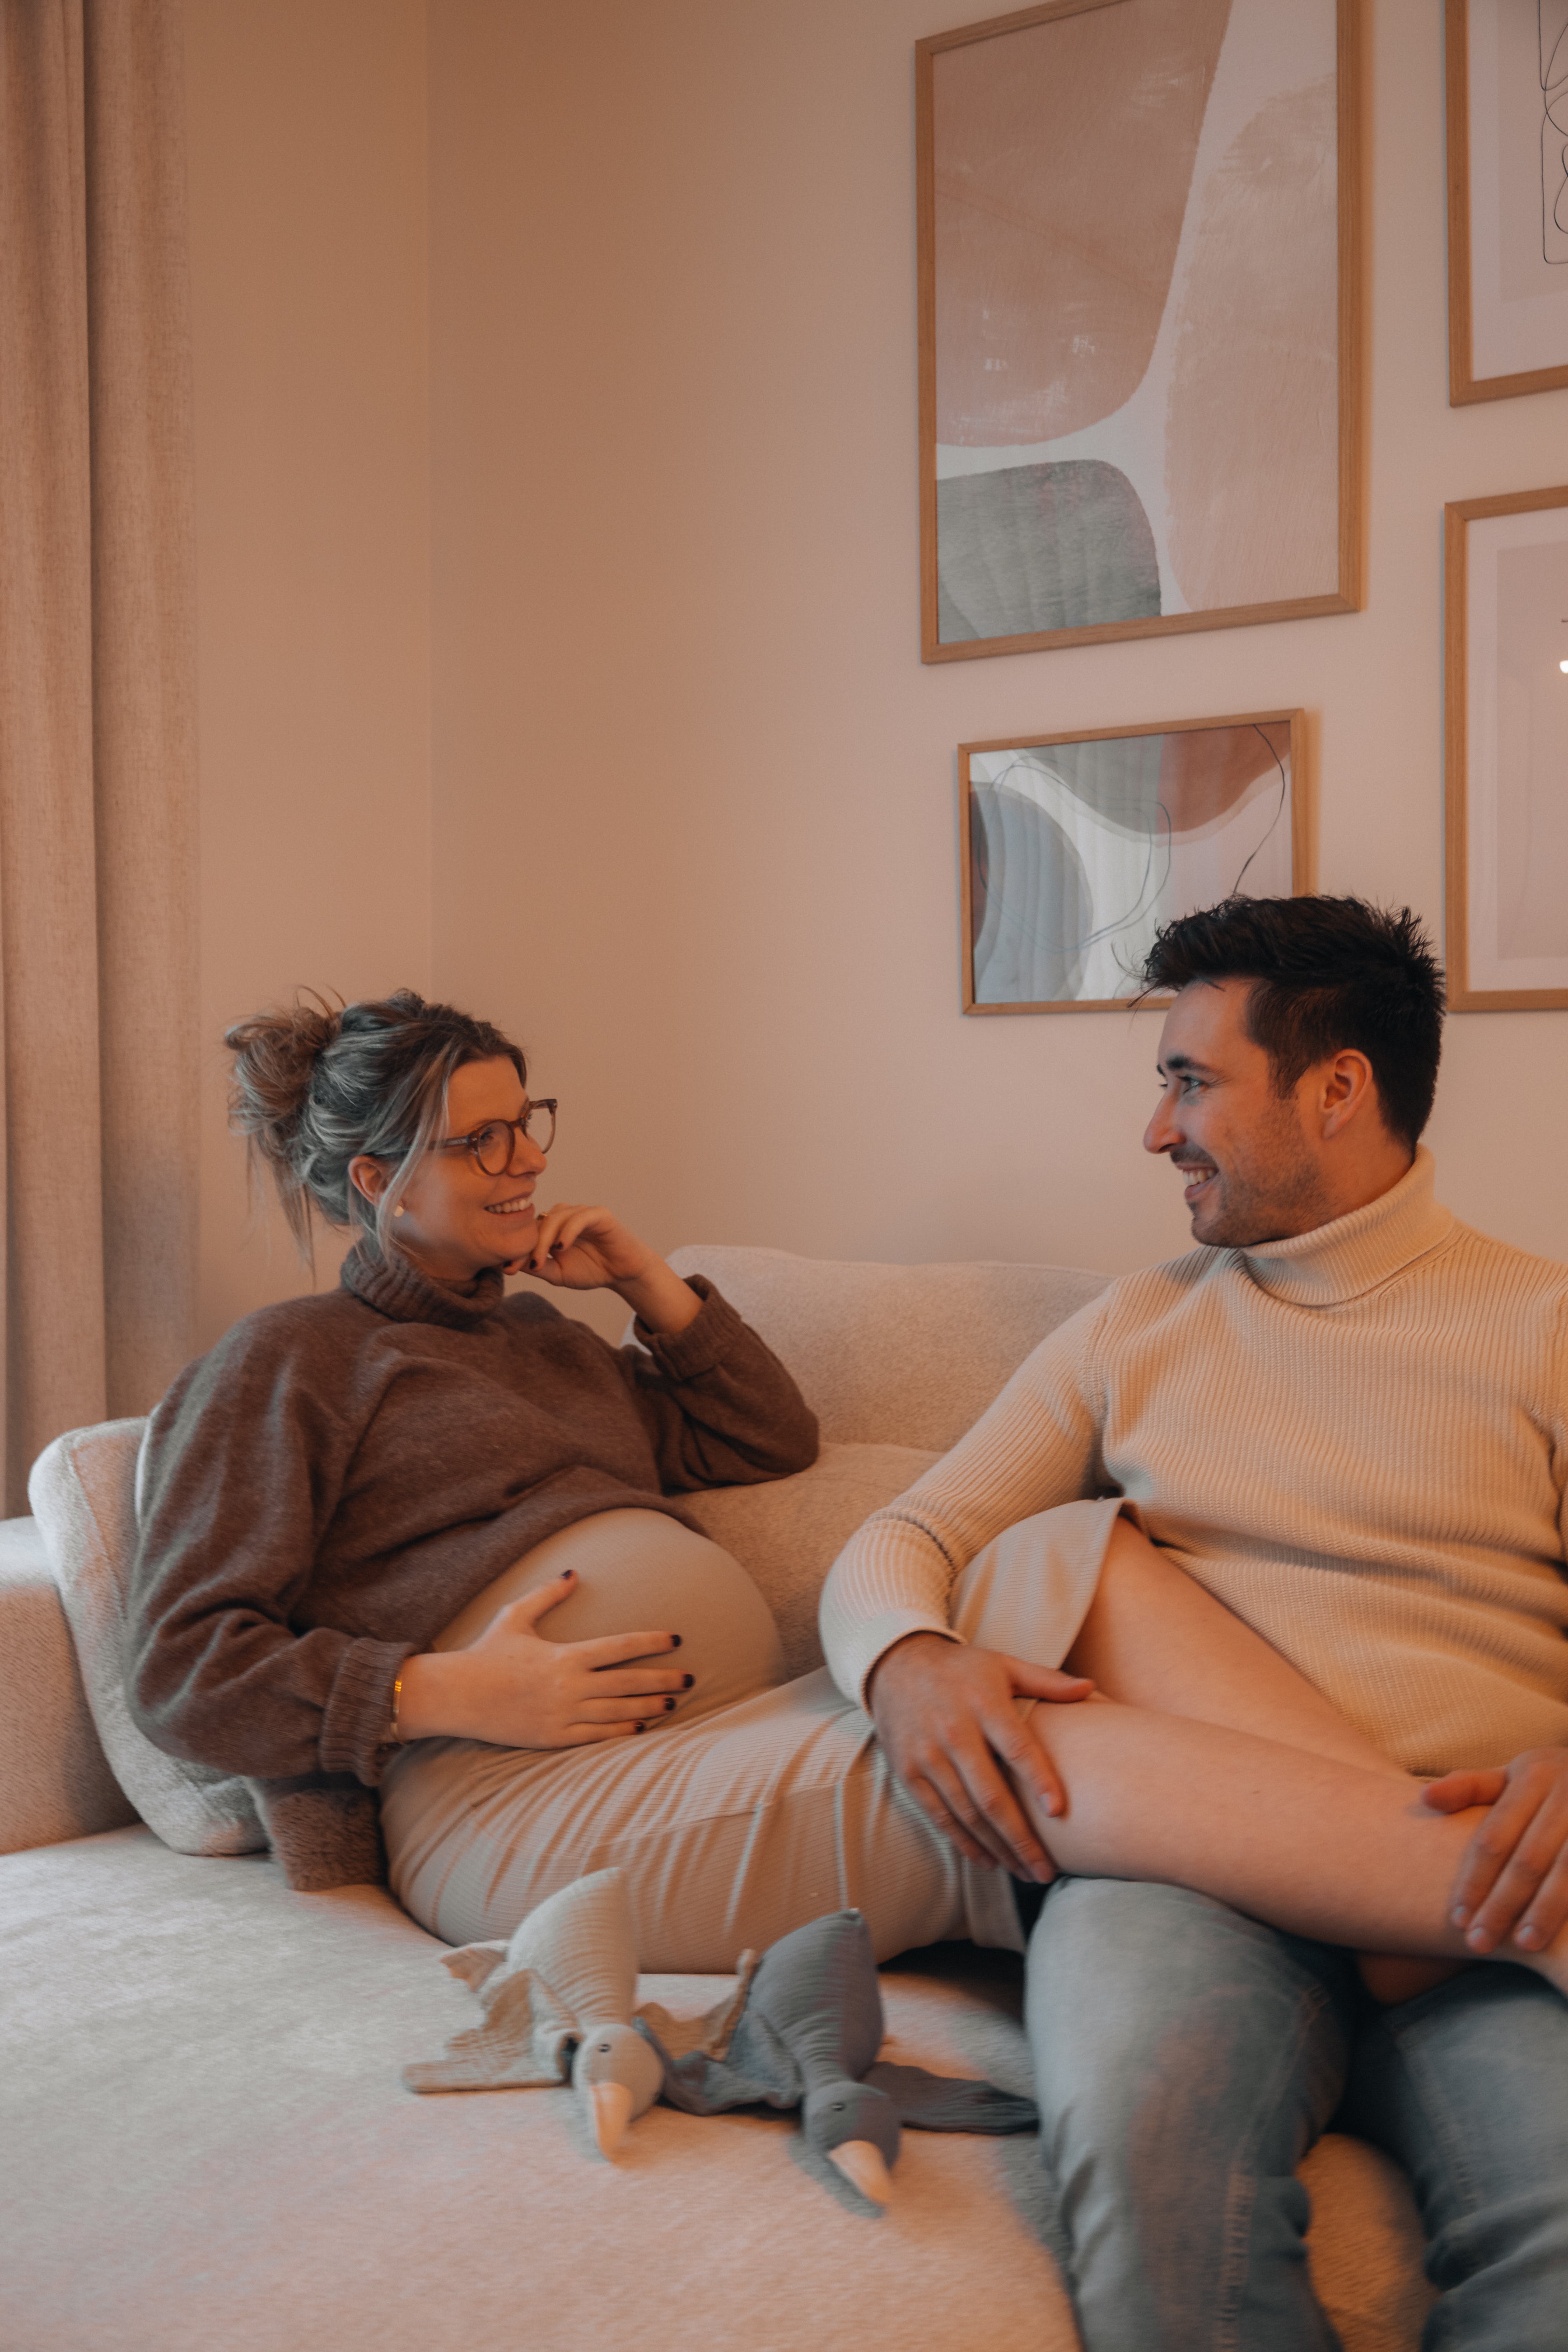 Eine schwangere Frau sitzt mit ihren Beinen auf ihrem Mann | Quelle: Pexels